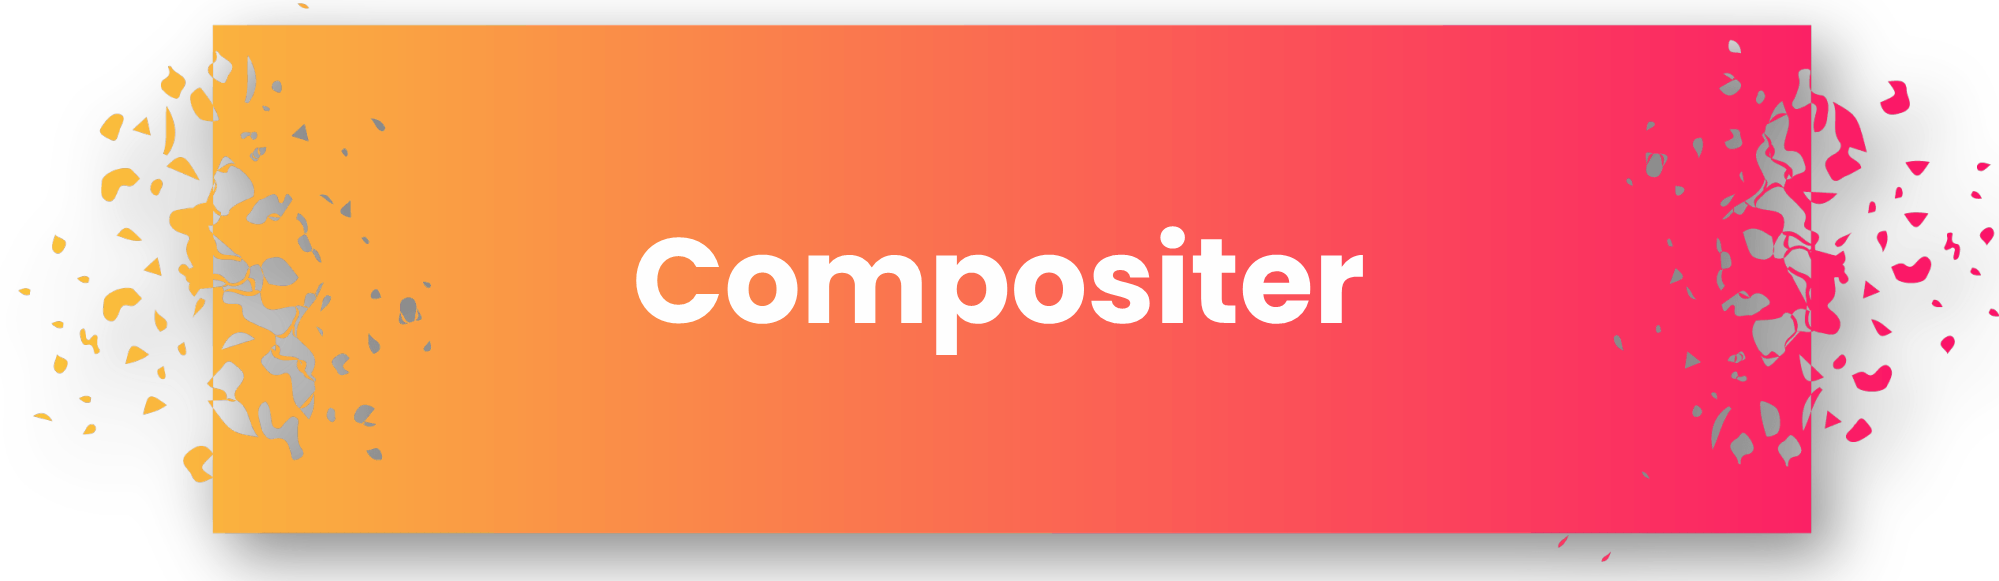 Compositer